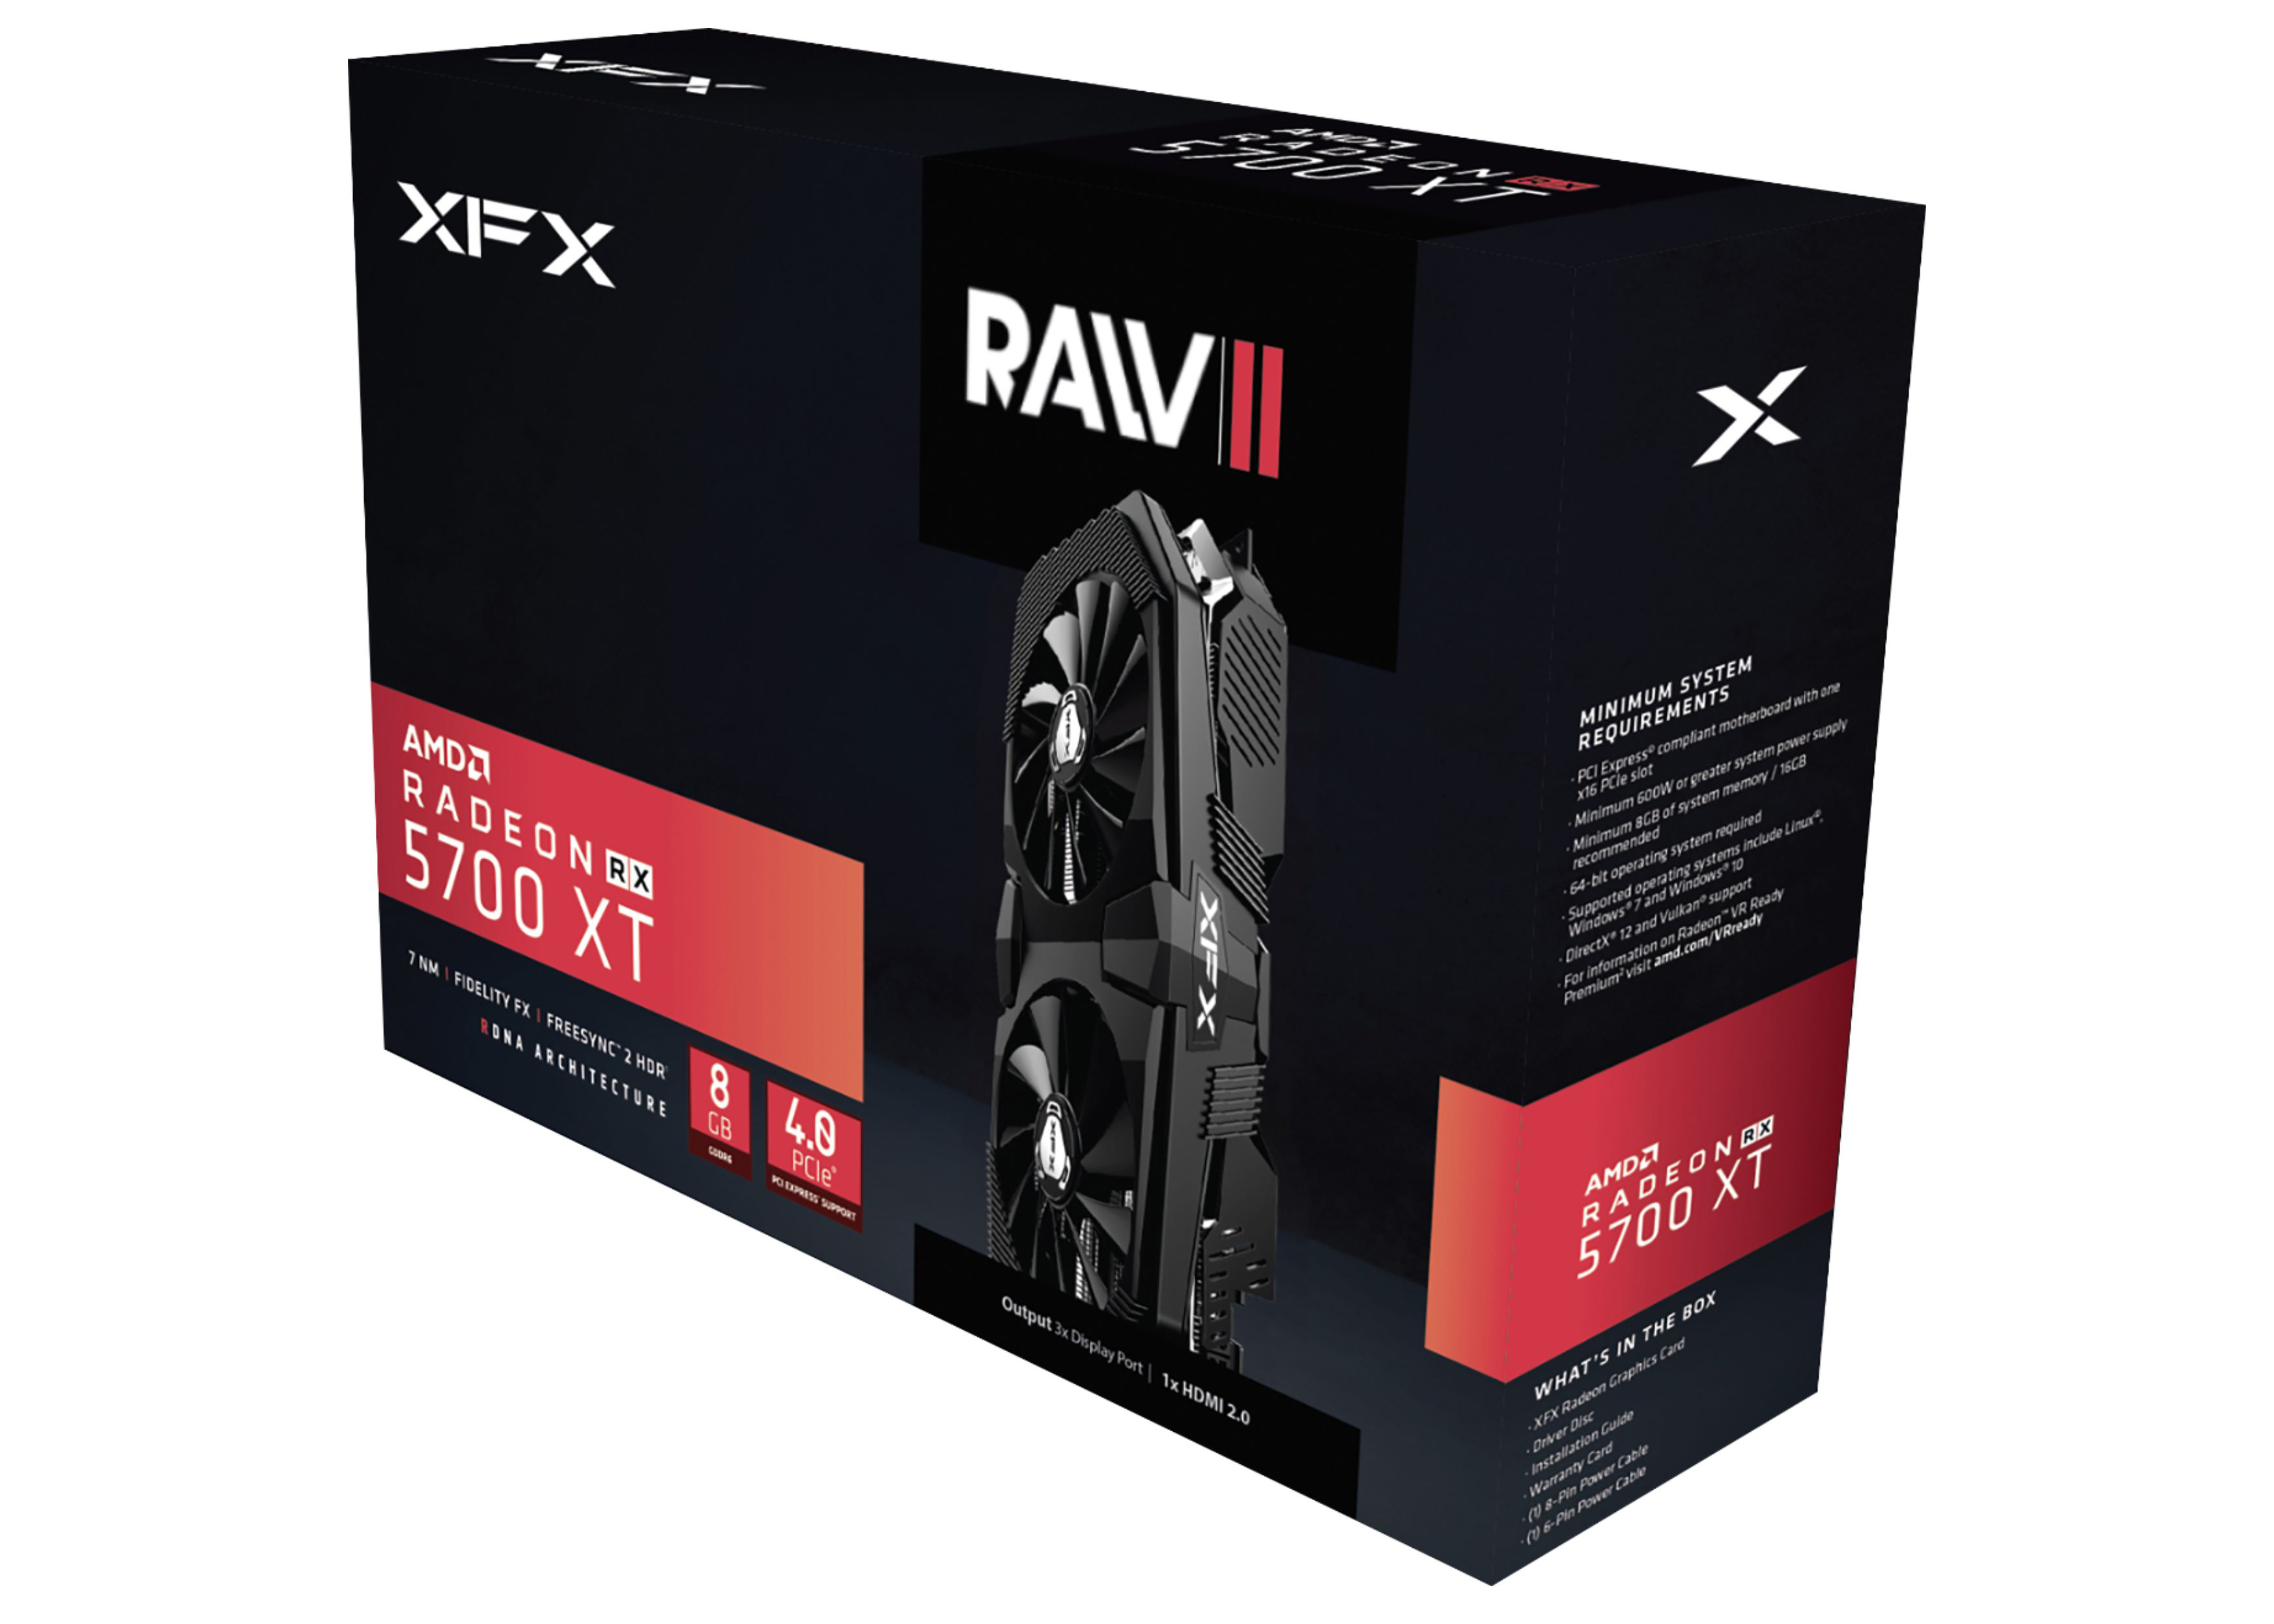 AMD XFX Radeon RX 5700 XT RAW II Graphics Card (RX-57XT8OFFR